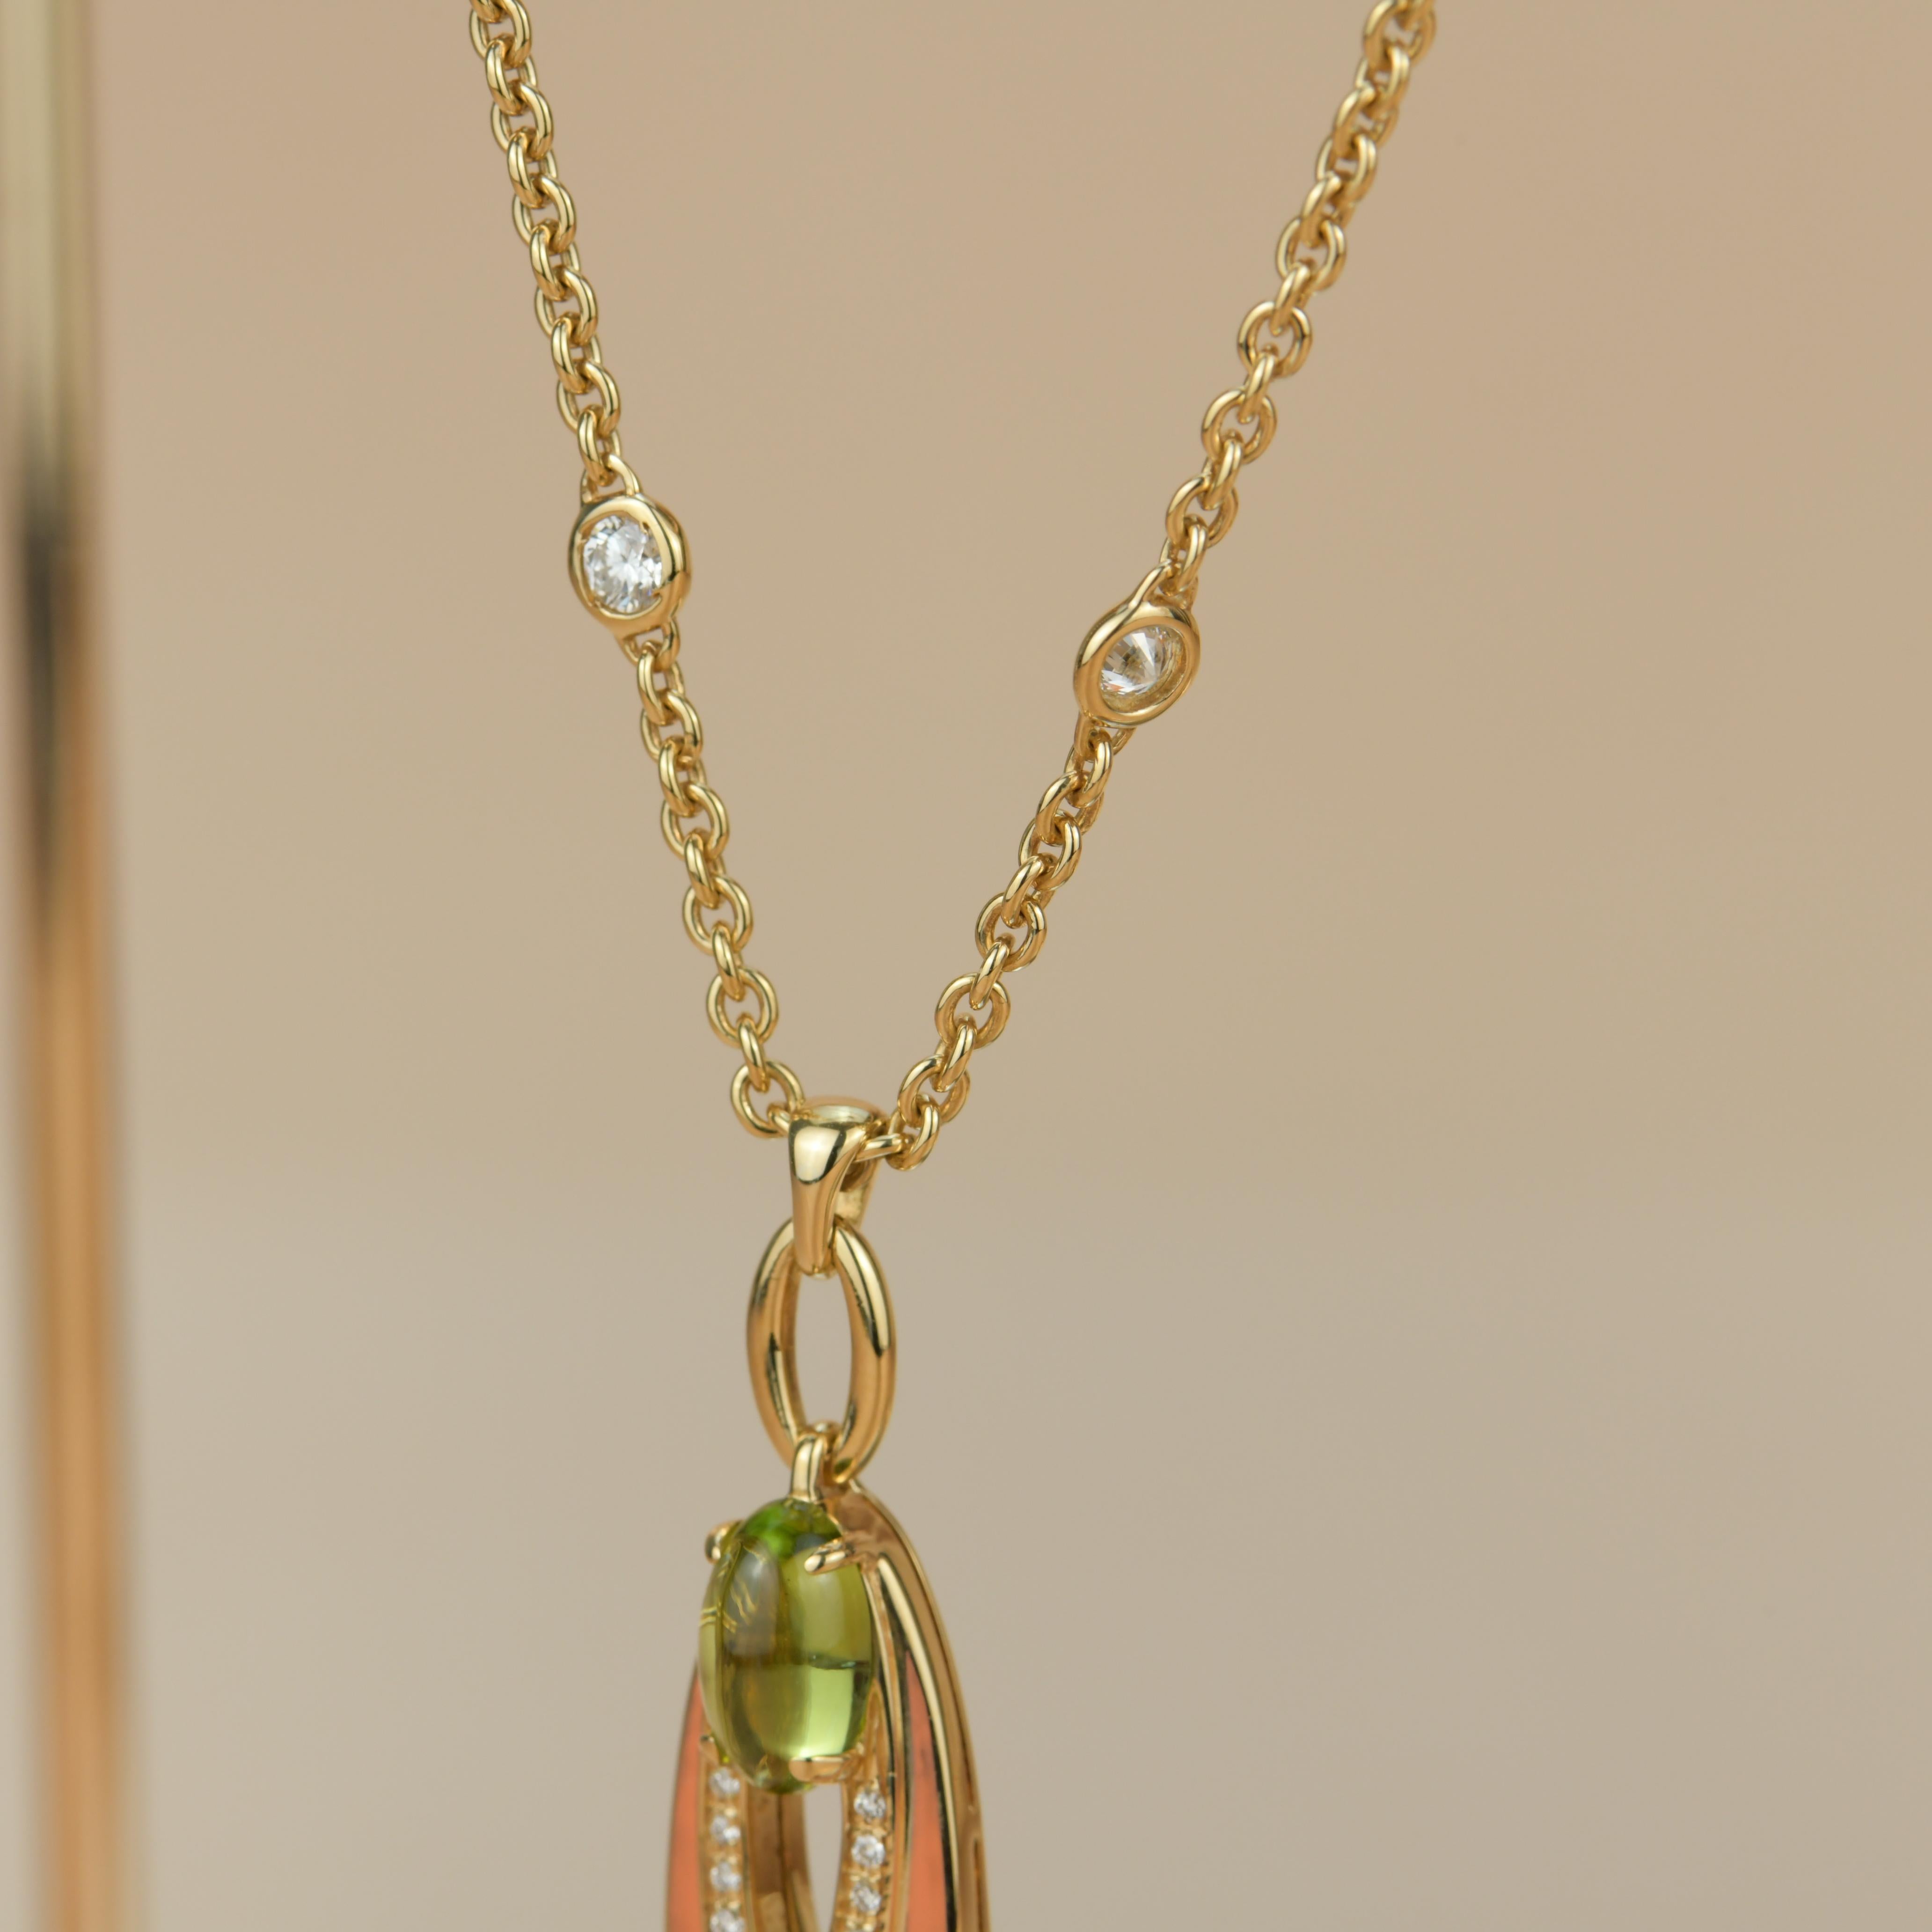 Brilliant Cut Bvlgari Peridot Diamond 18K Gold Pendant Necklace For Sale